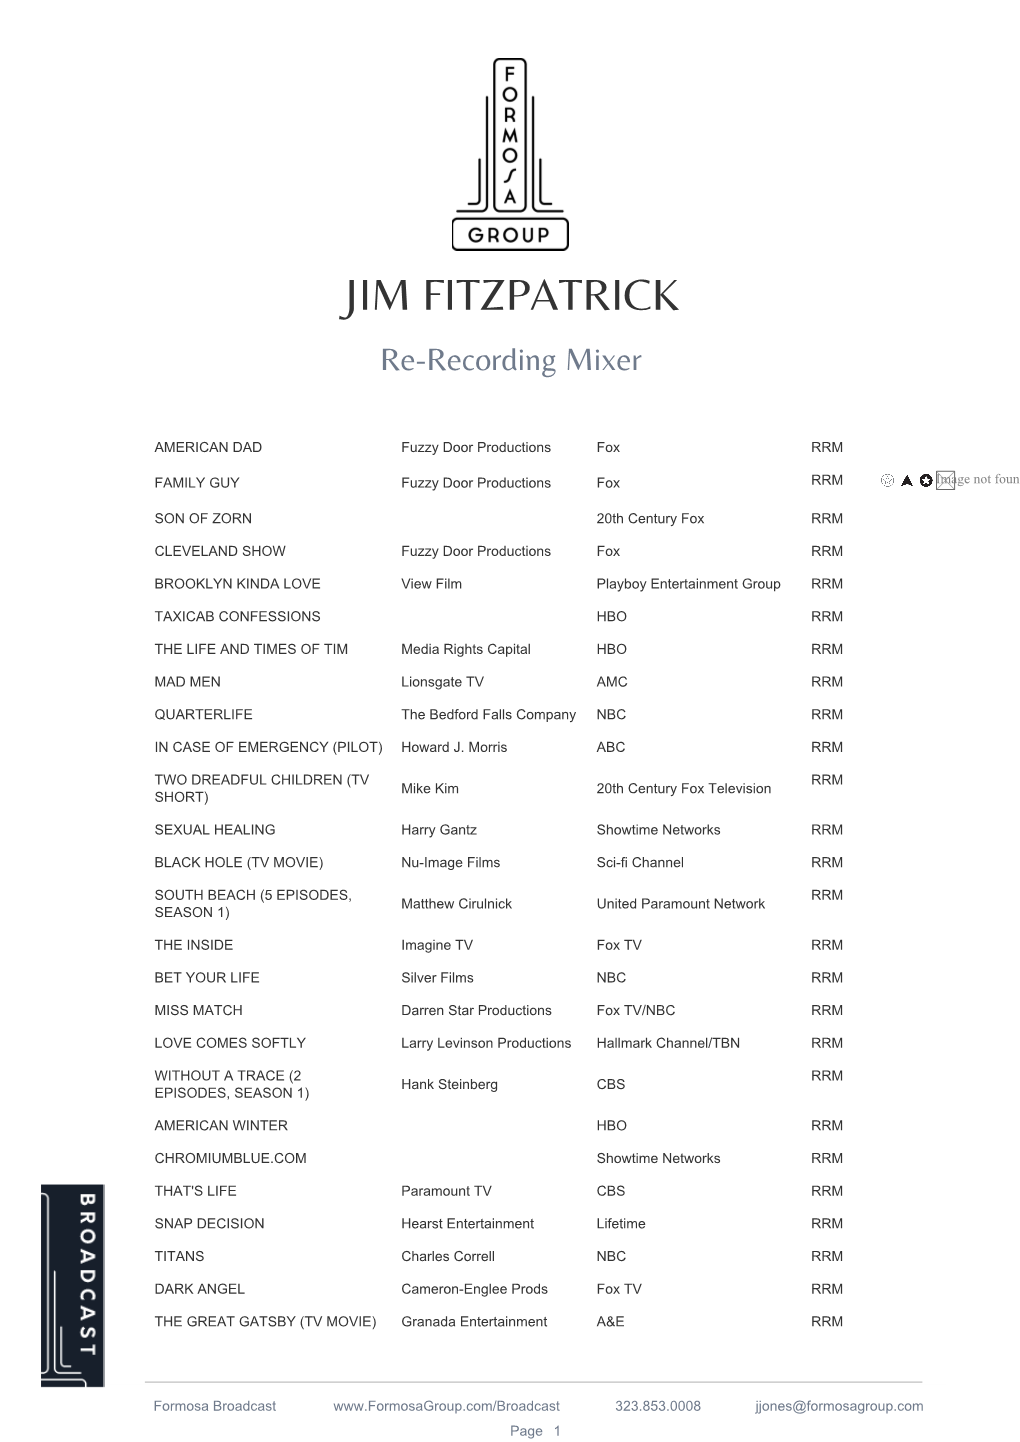 JIM FITZPATRICK Re-Recording Mixer